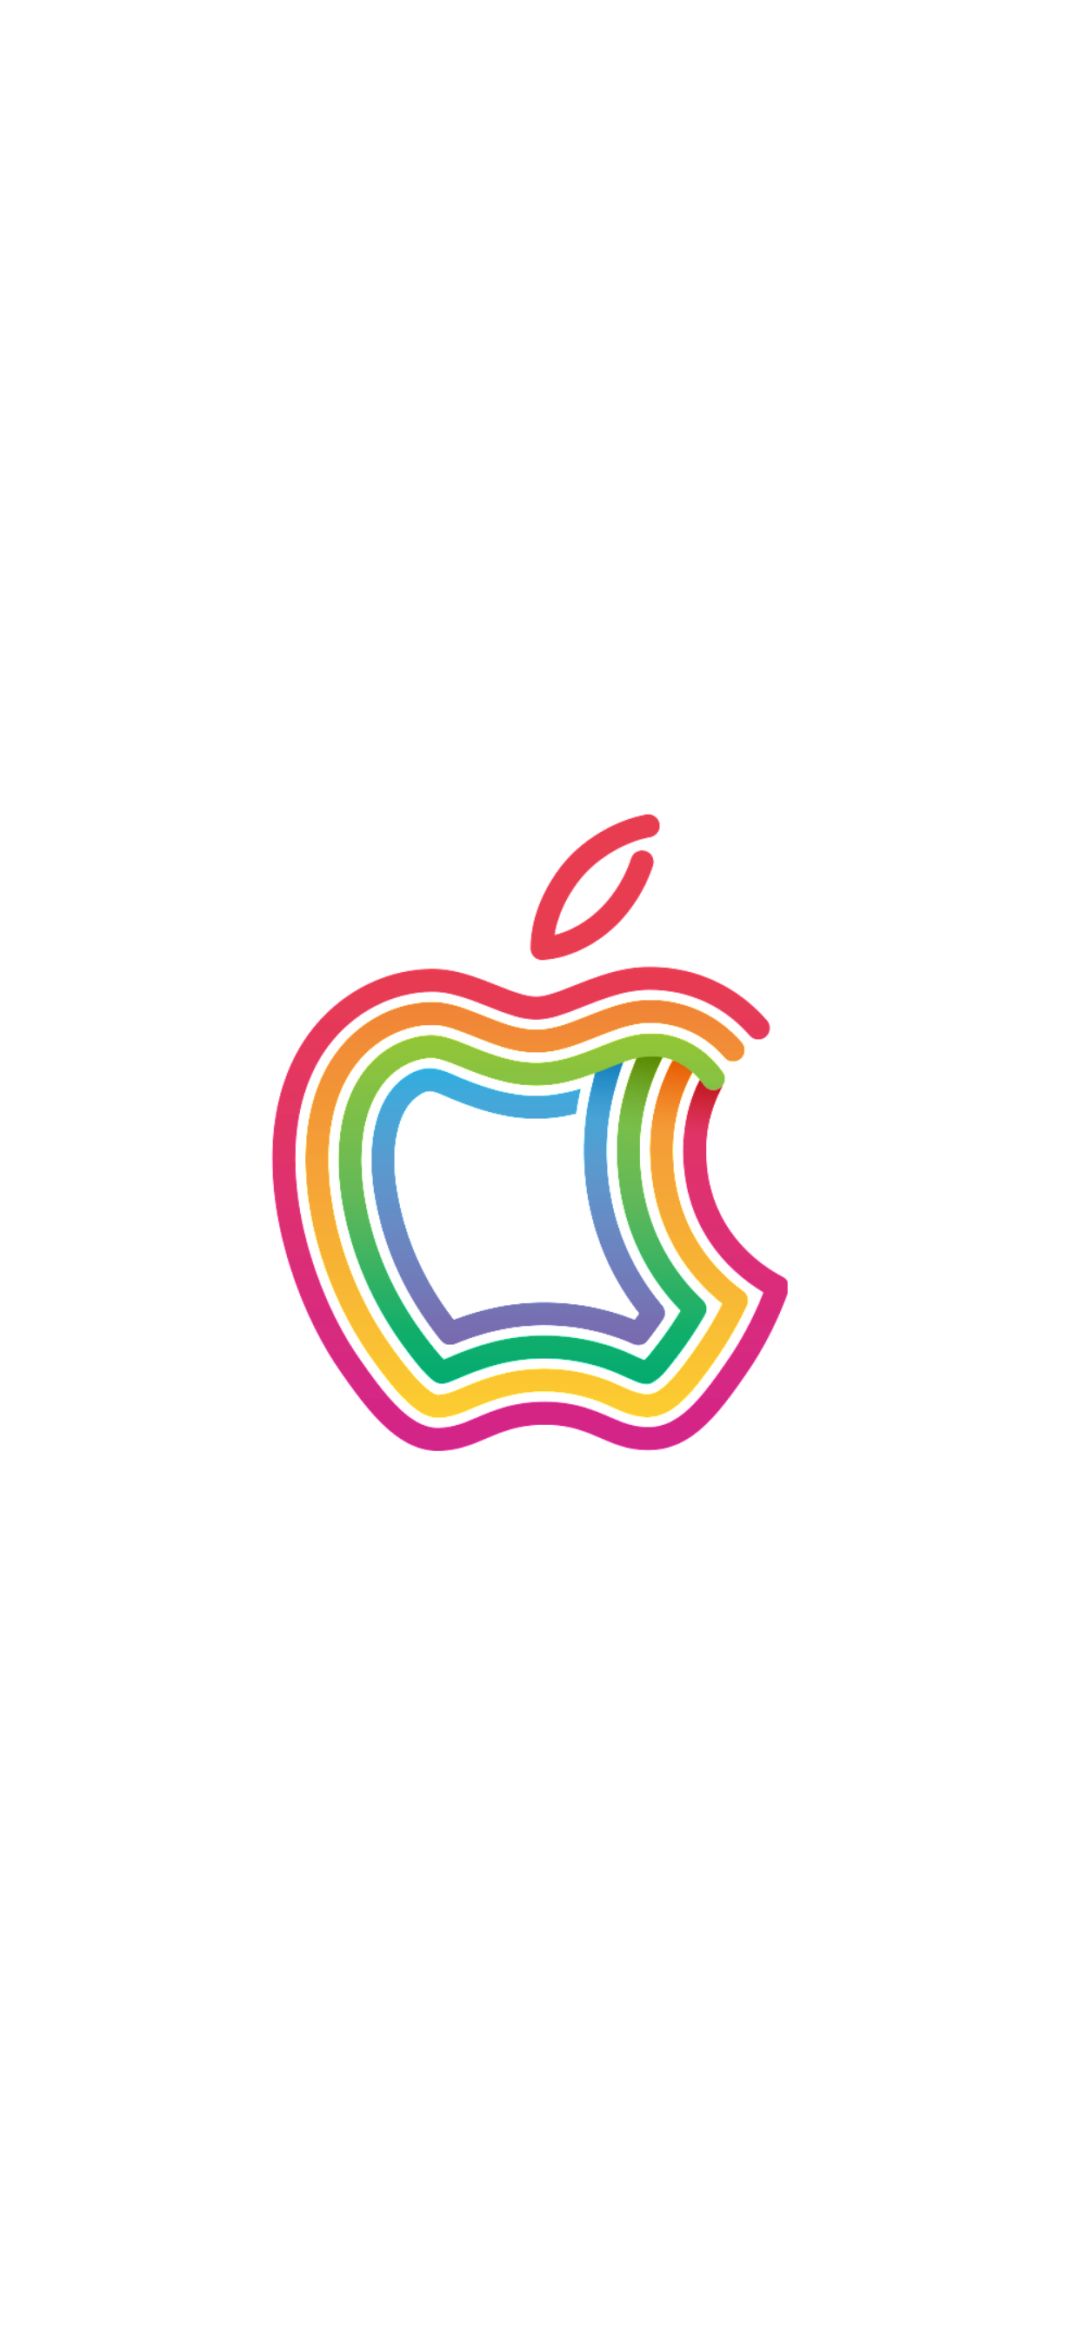 苹果logo原图壁纸新苹果logo壁纸